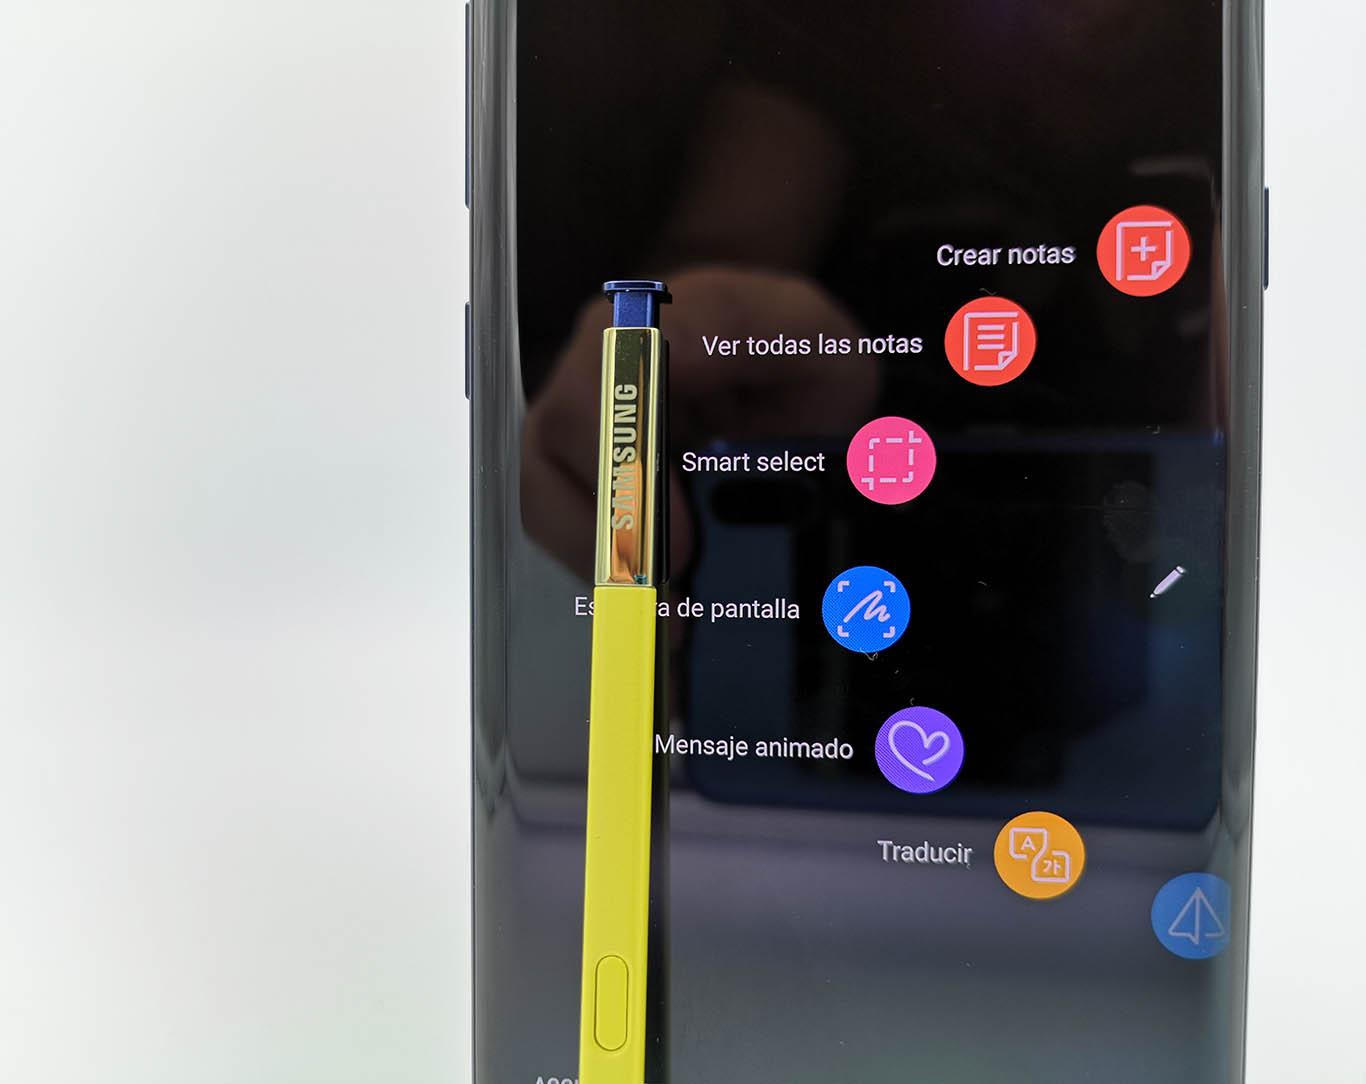 Samsung Galaxy Note 9 s pen menu